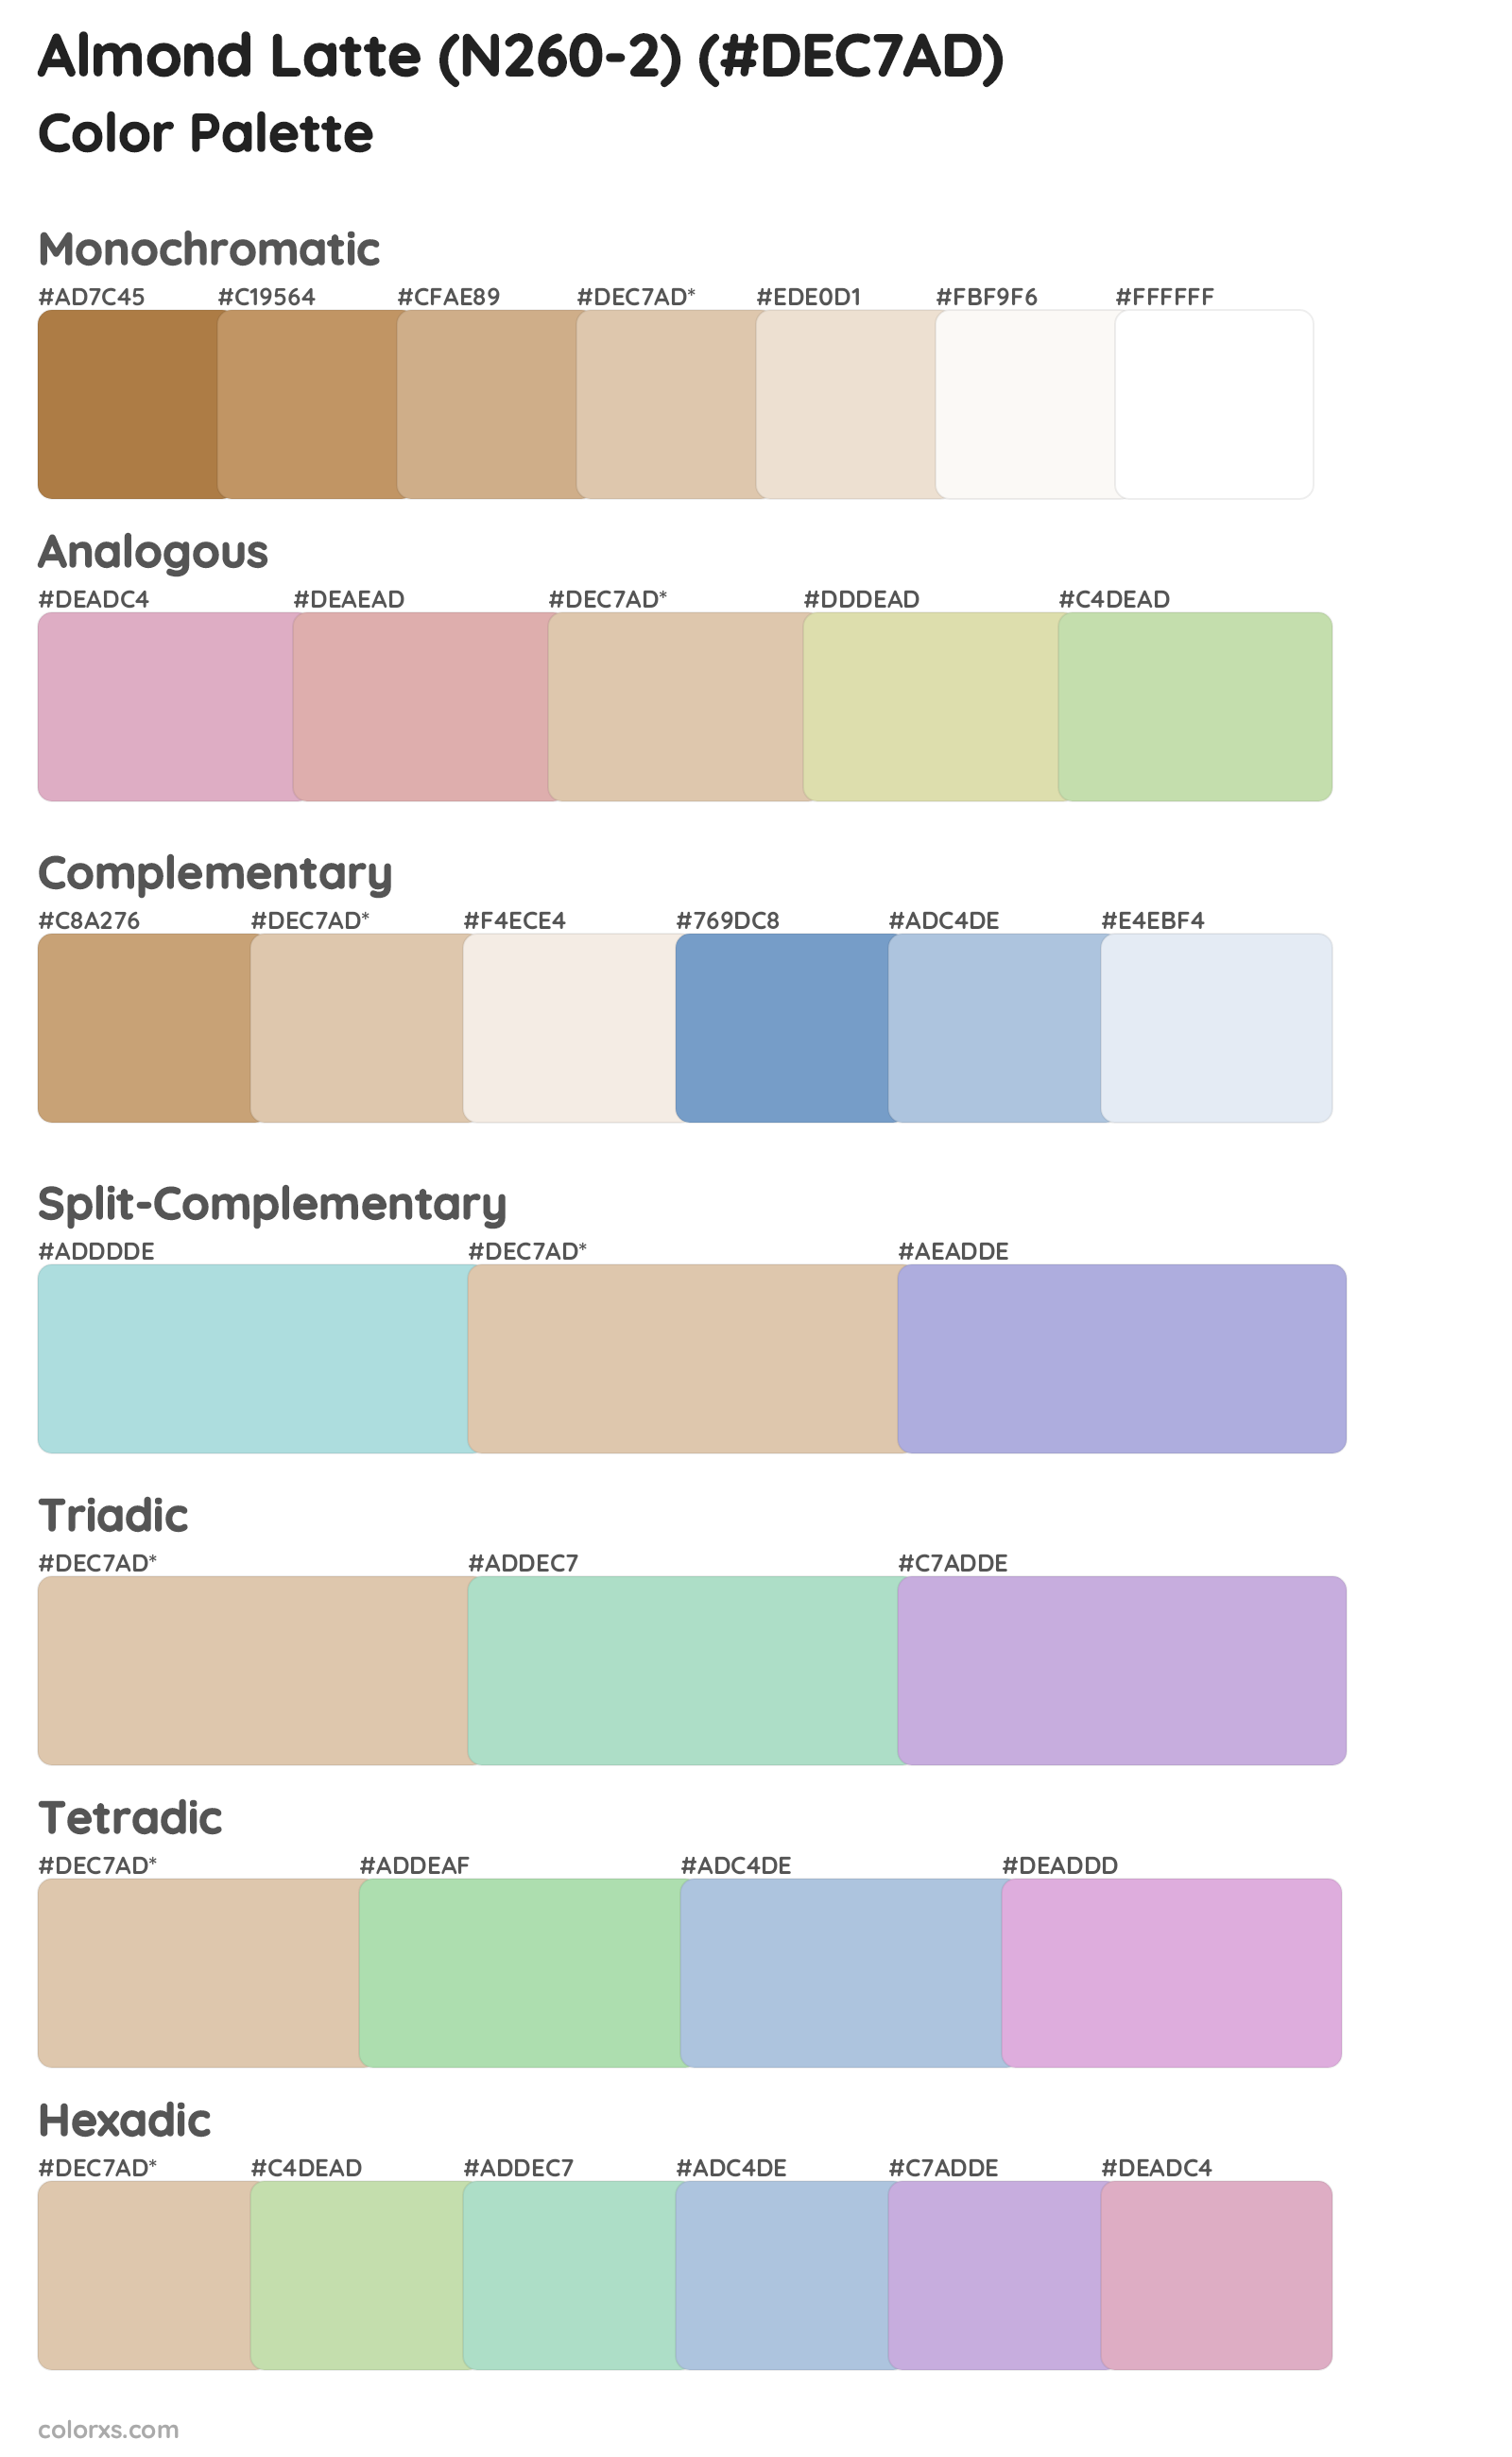 Almond Latte (N260-2) Color Scheme Palettes